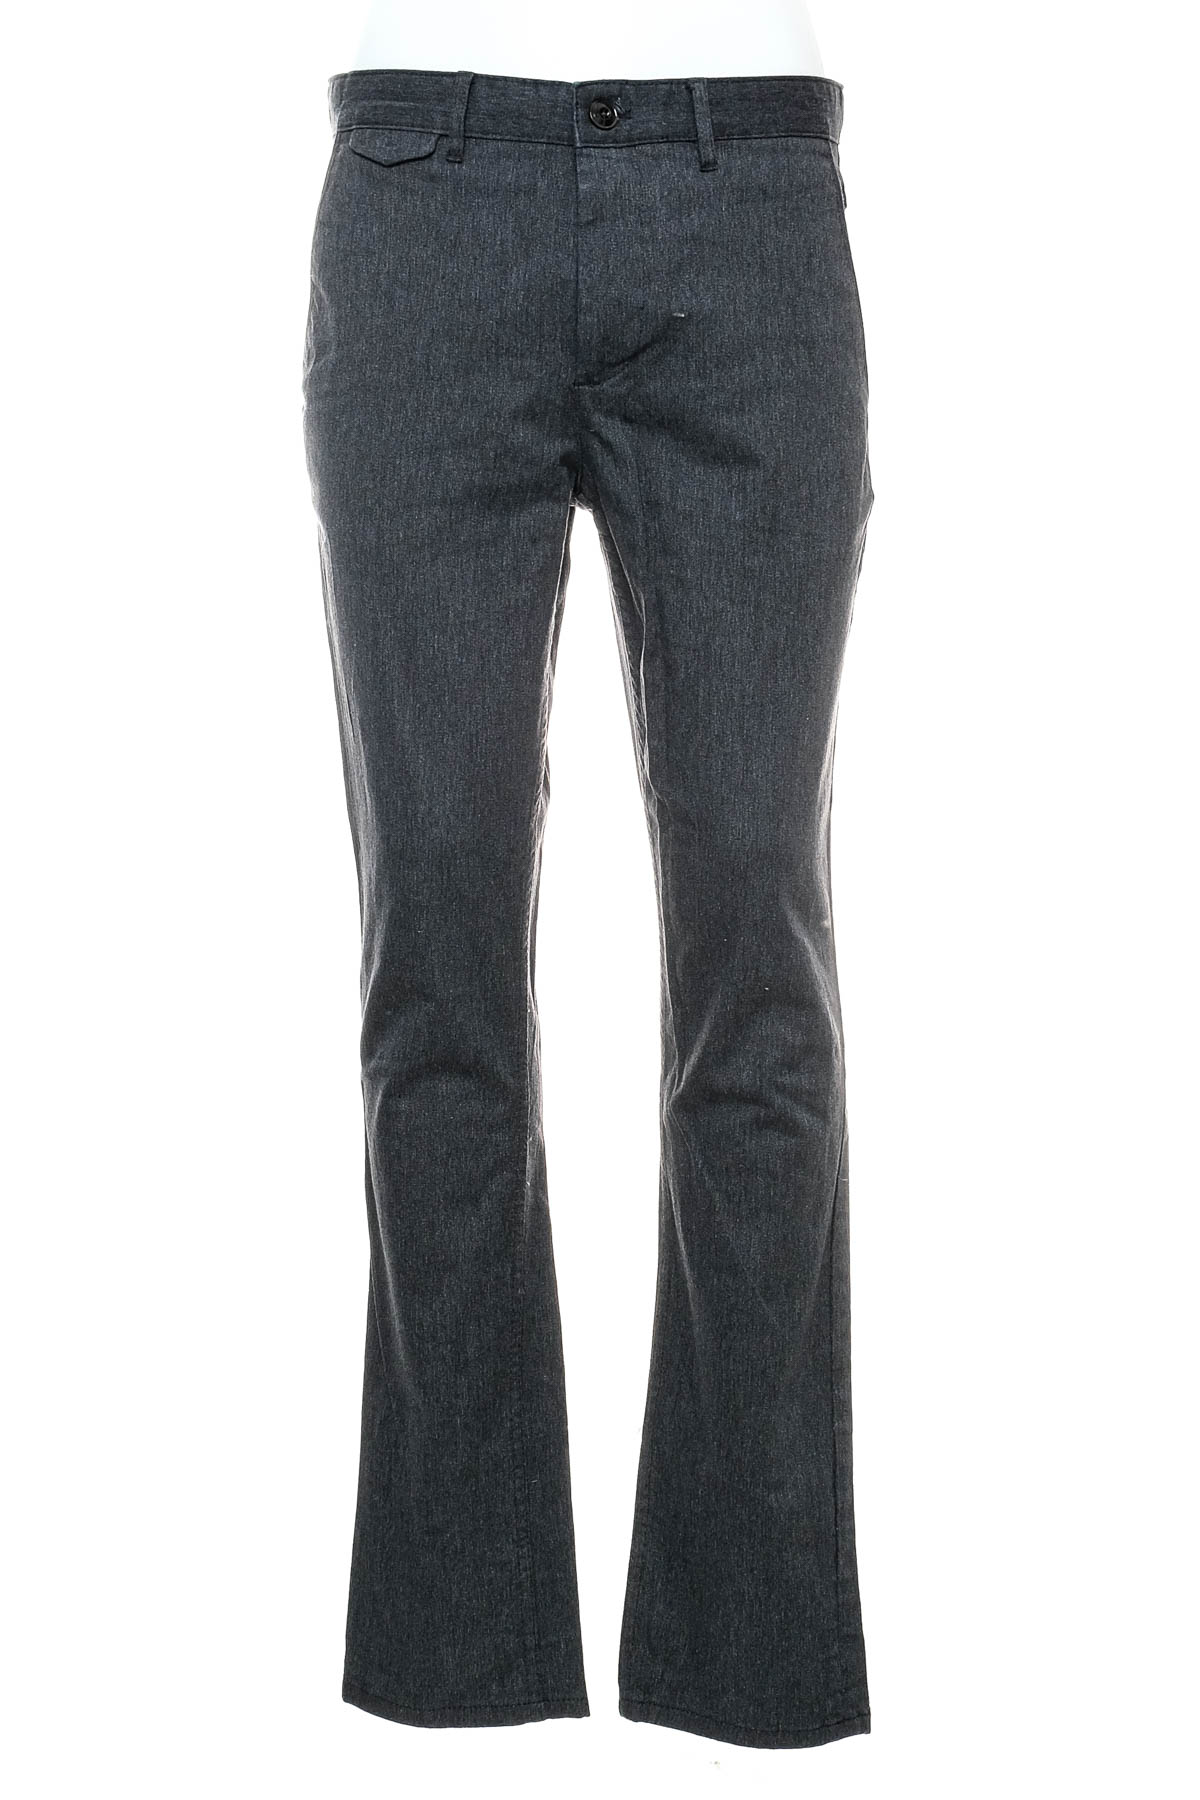 Men's trousers - ZARA - 0